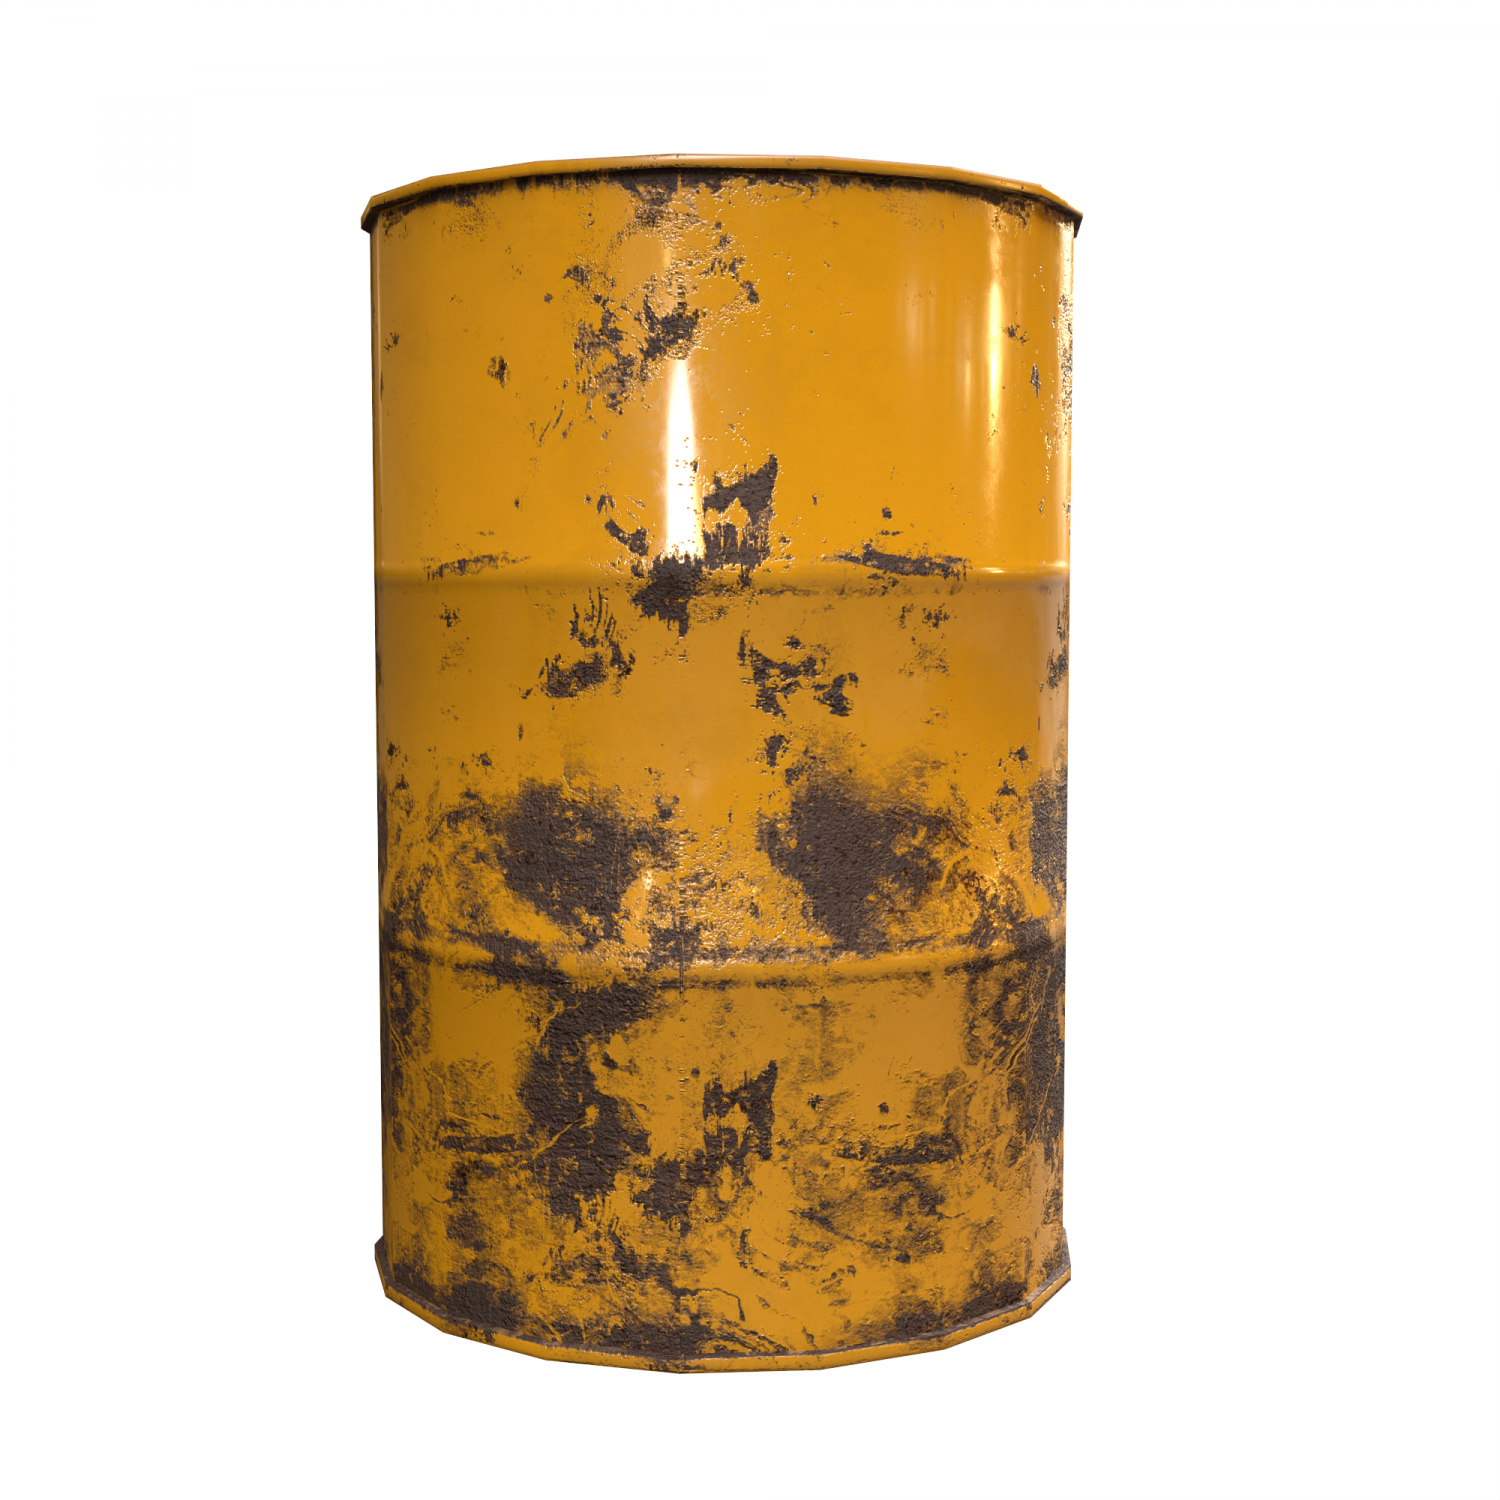 Instant barrel rust фото 24